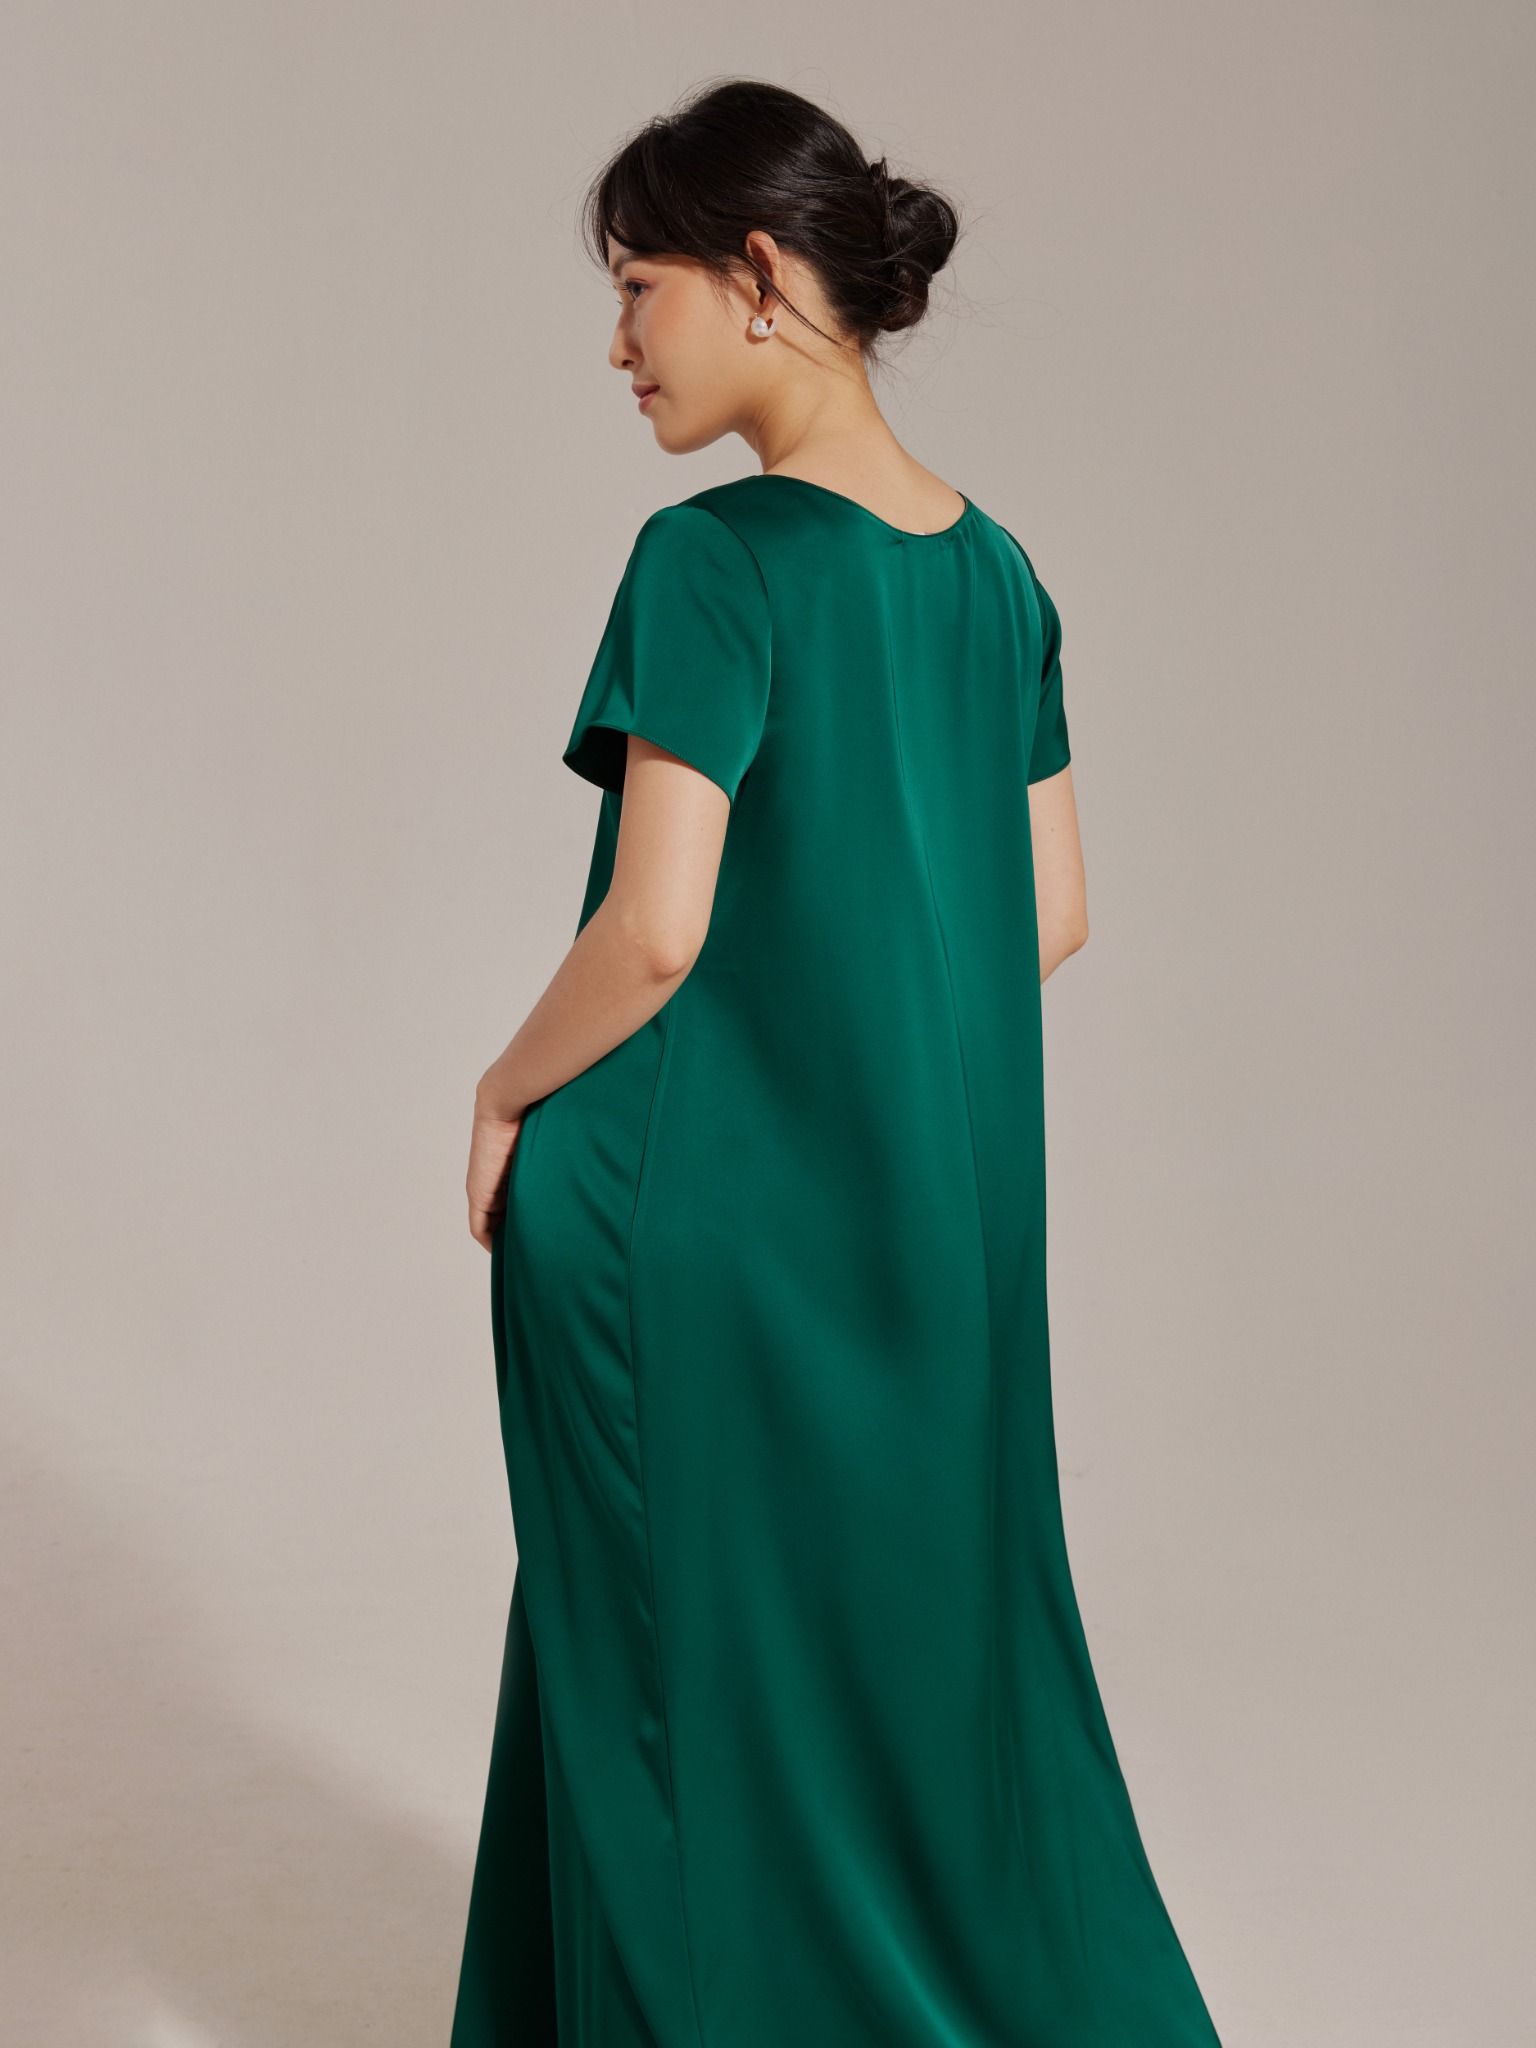  Đầm lụa dài ngắn tay Mauve Classy Silk dress 